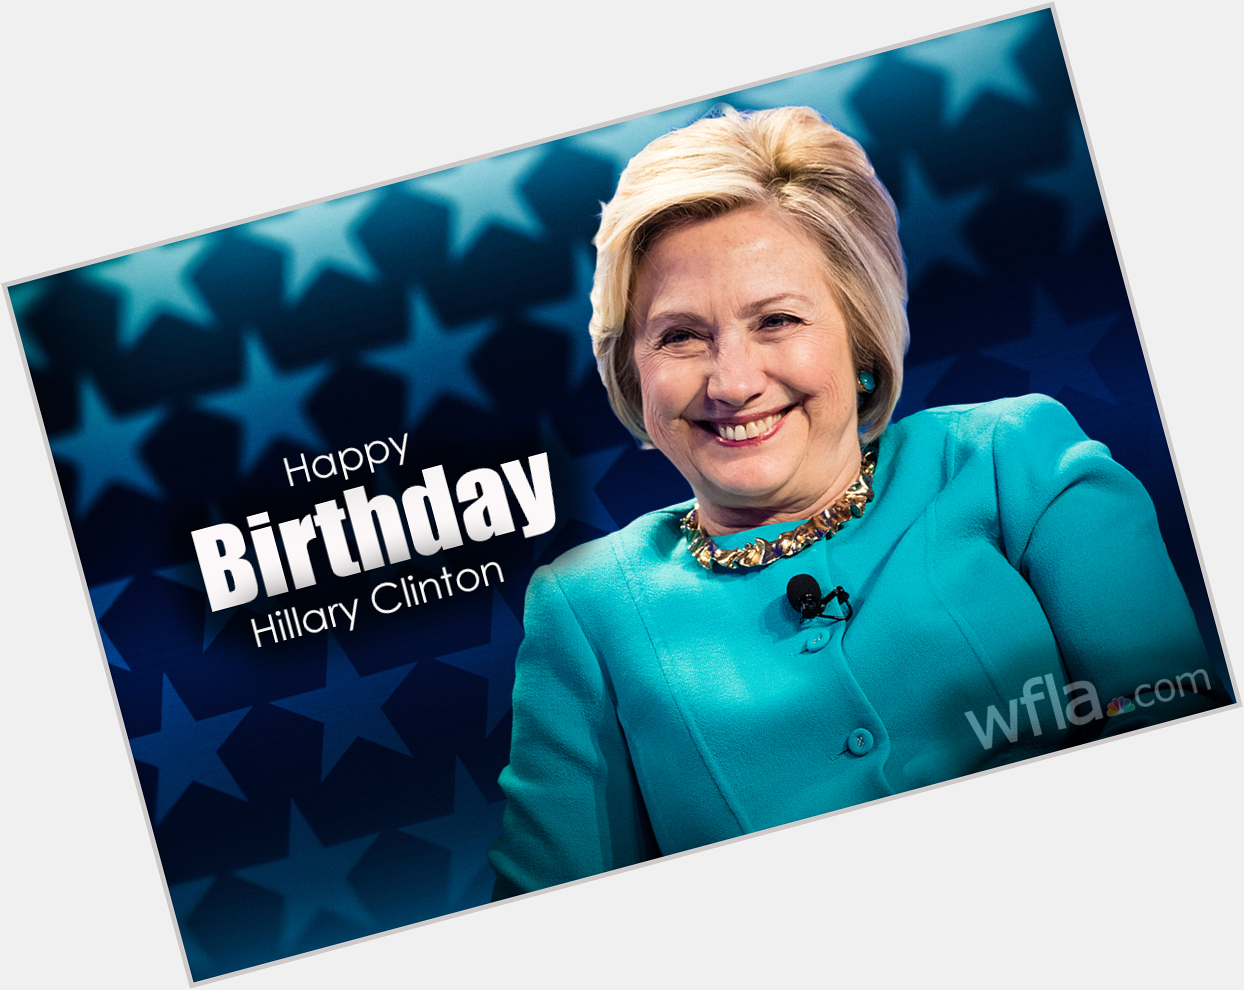 Happy 73rd Birthday to Hillary Clinton!  